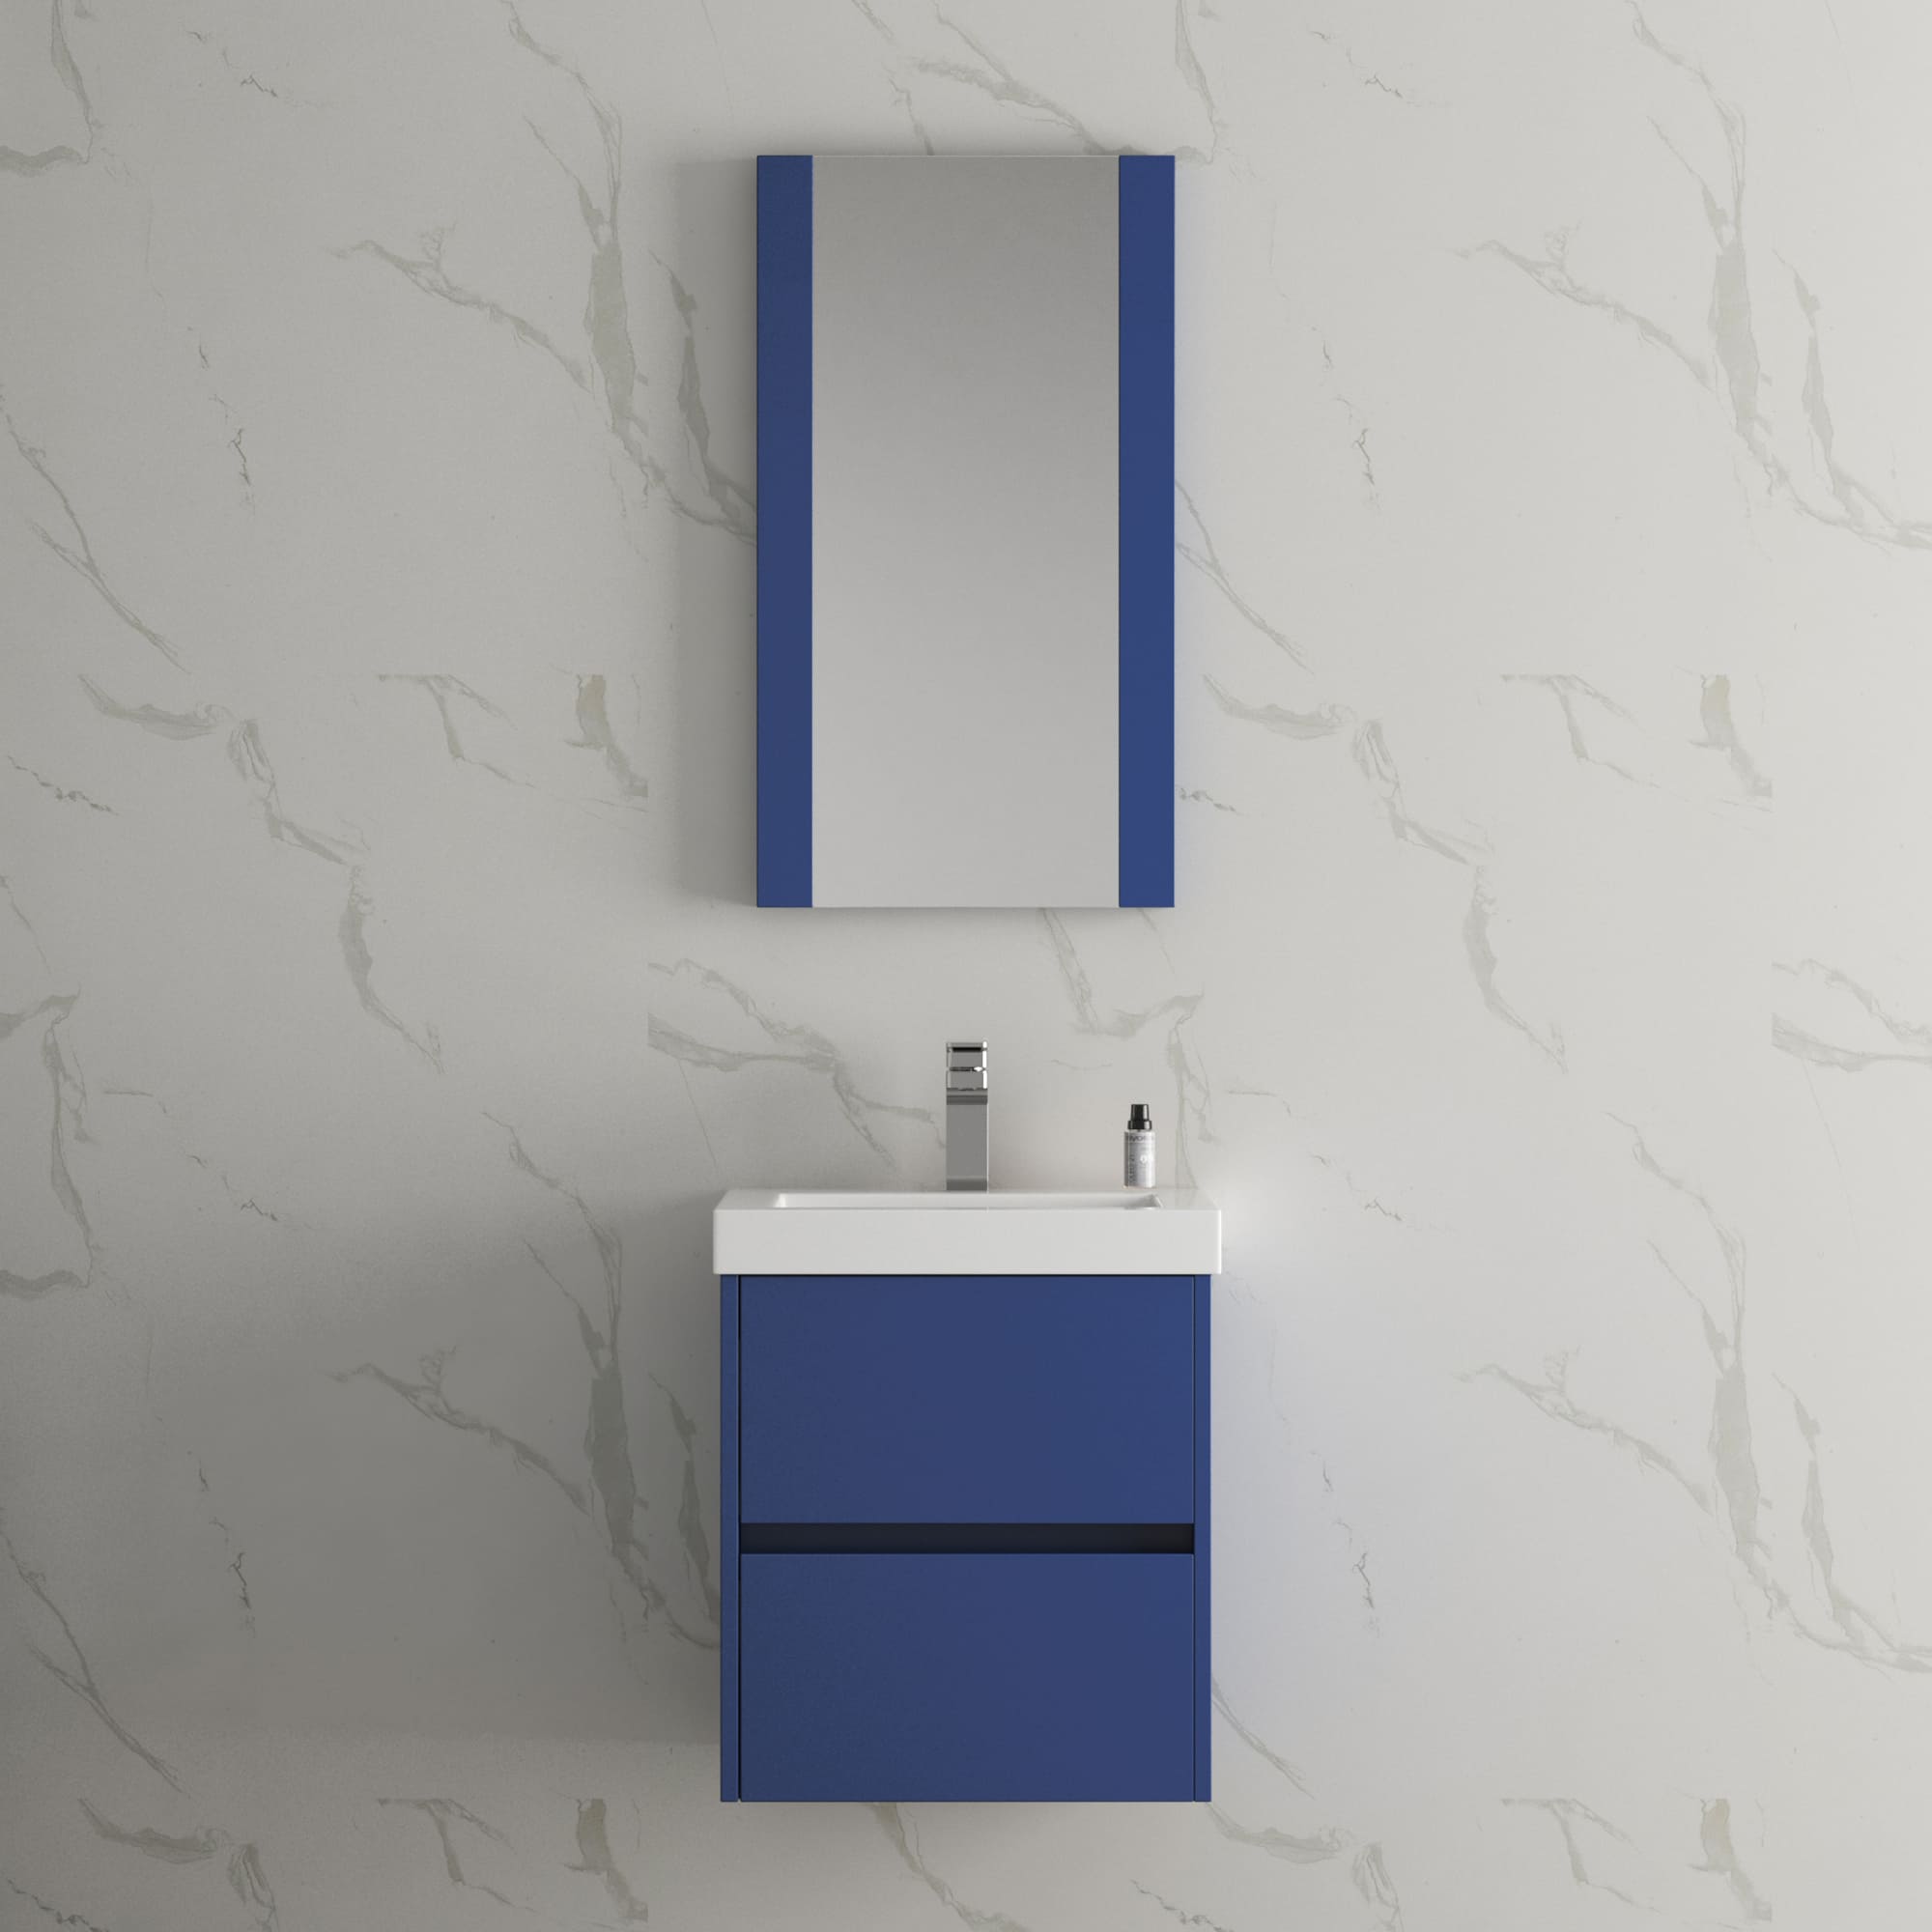 Valencia 20" Bathroom Vanity  #size_20"  #color_navy blue